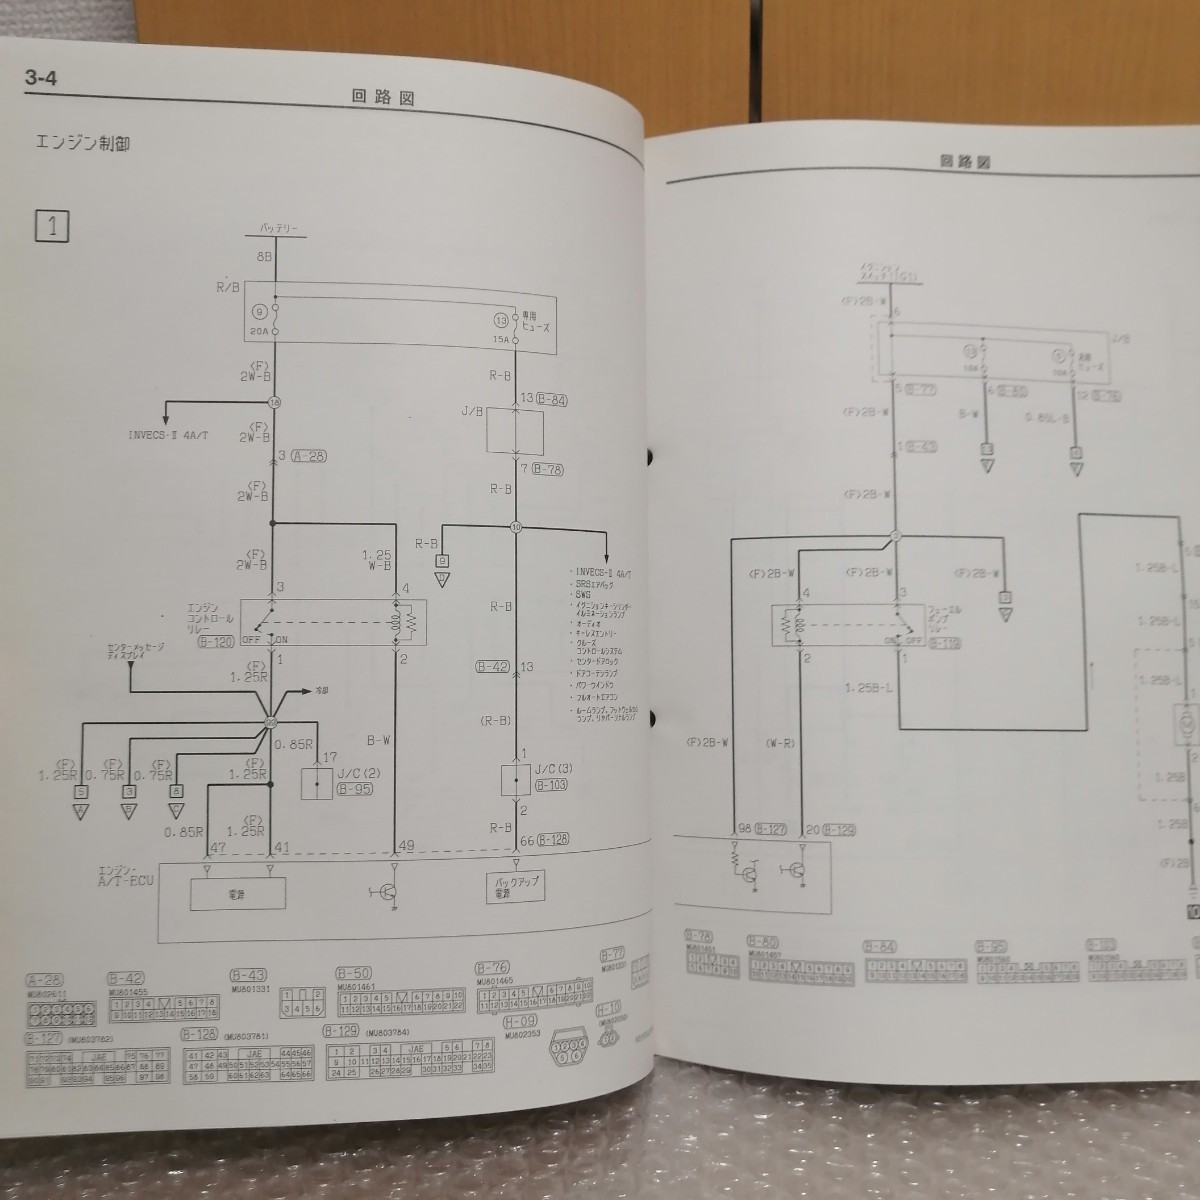  Mitsubishi Мицубиси Diamante DIAMANTE инструкция по обслуживанию электрический схема проводки сборник приложение 2004-11 ABA-F34A техническое обслуживание руководство по обслуживанию сервисная книжка книга по ремонту 